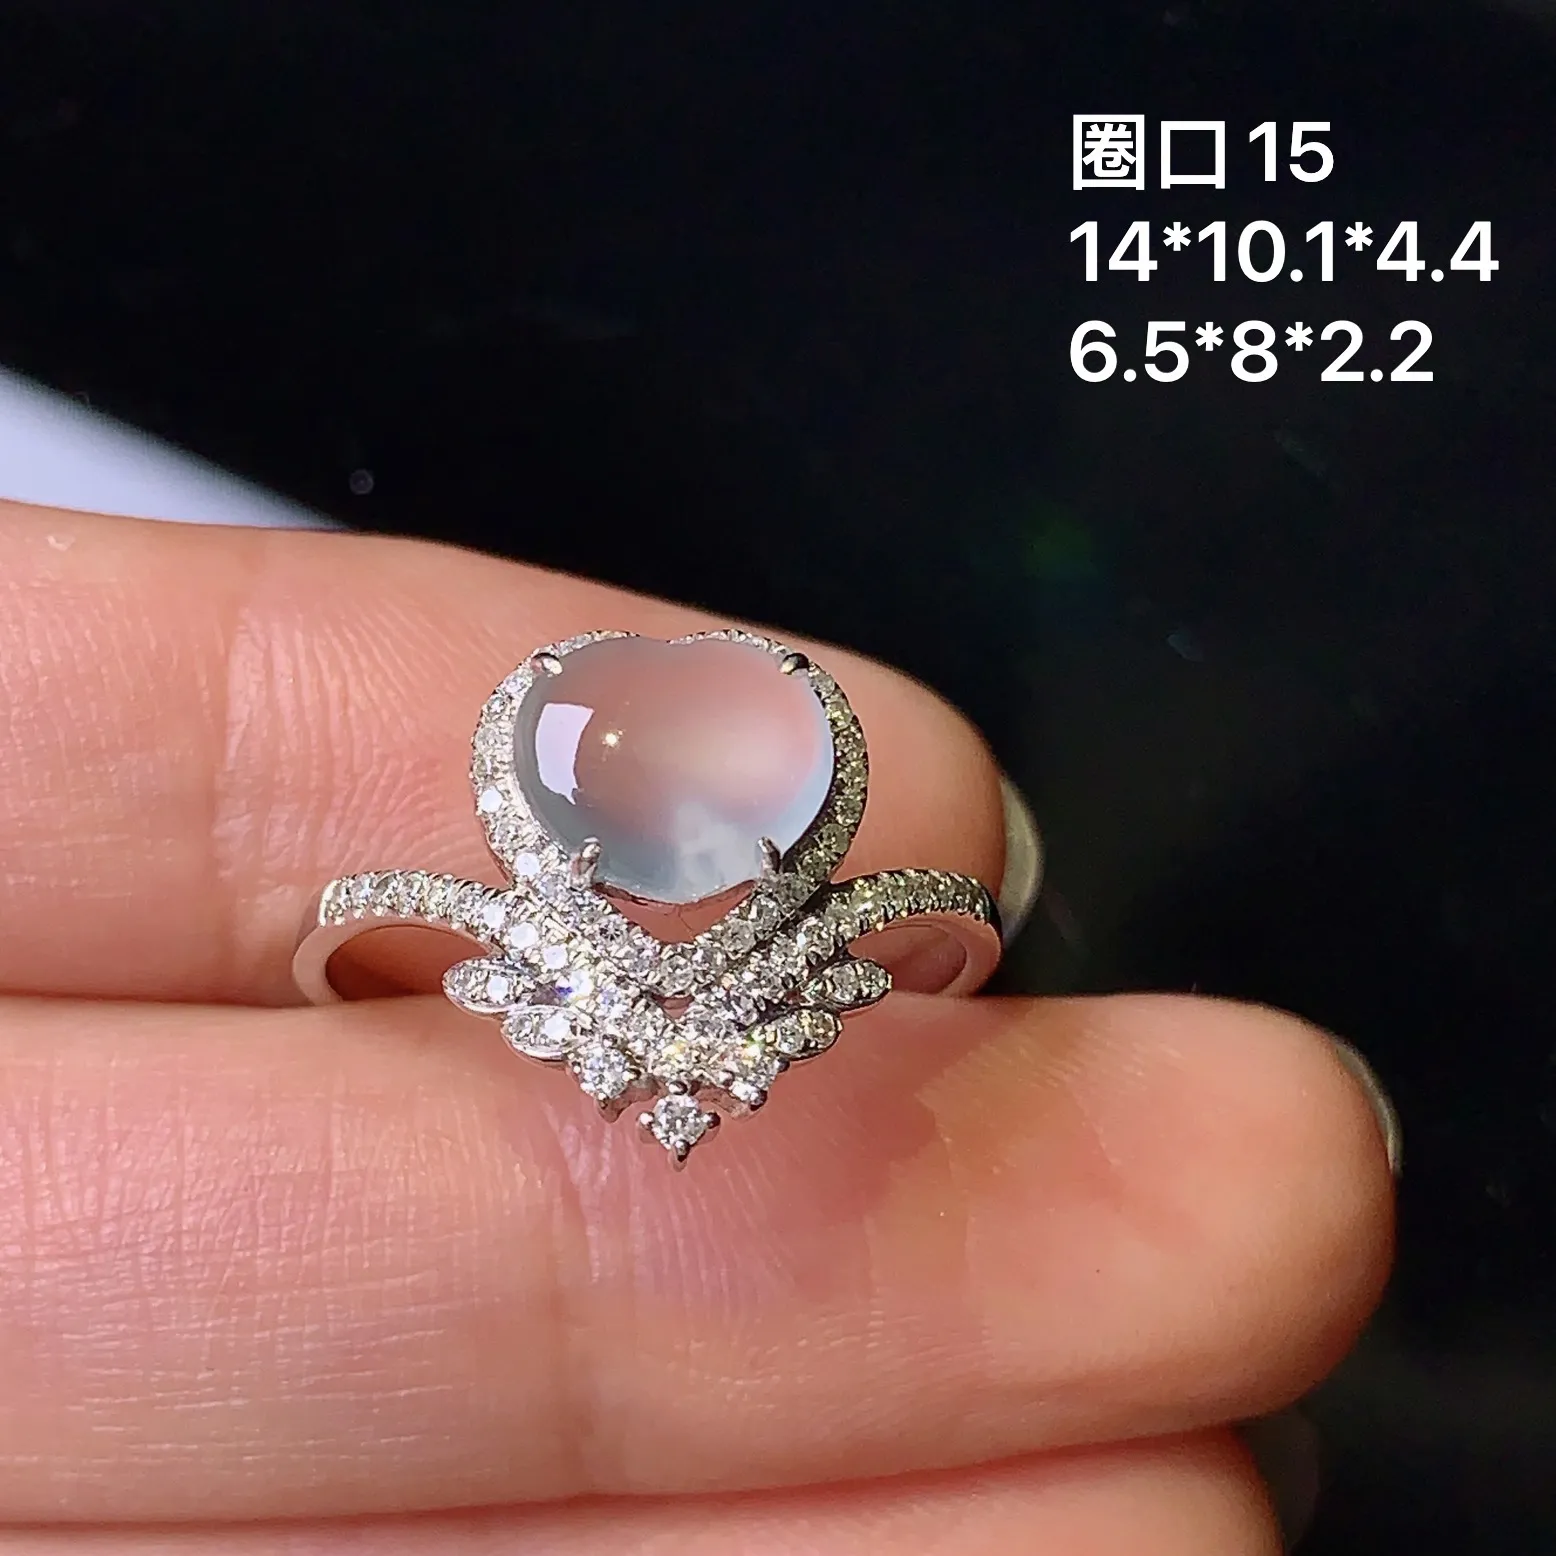 18k金钻镶嵌冰种心形戒指 玉质细腻 冰透水润 圈口15 整体尺寸14*10.1*4.4